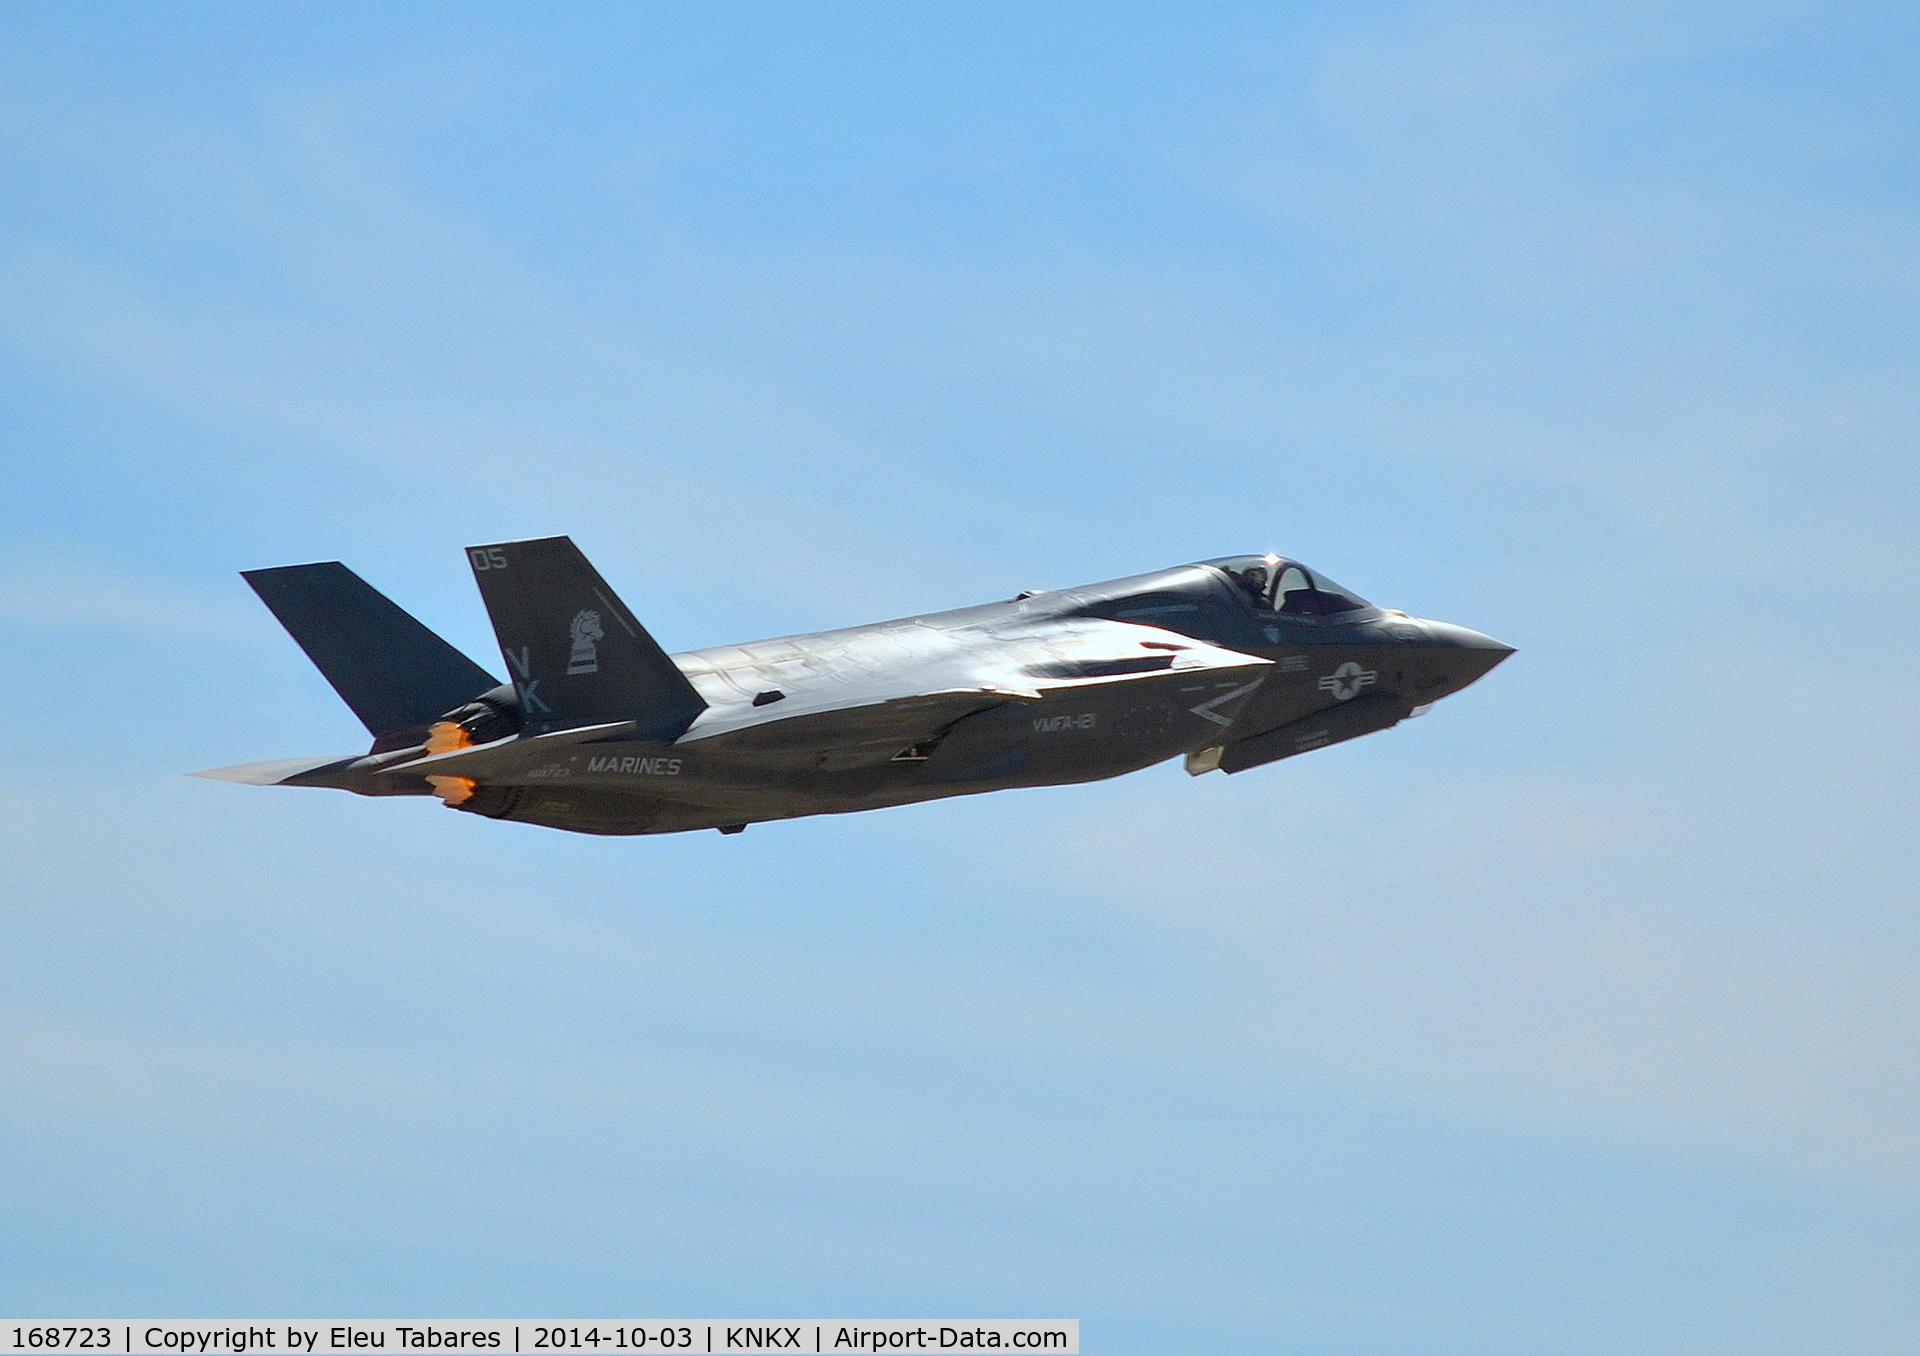 168723, 2013 Lockheed Martin F-35B Lightning II C/N BF-25, Taken at MCAS Miramar